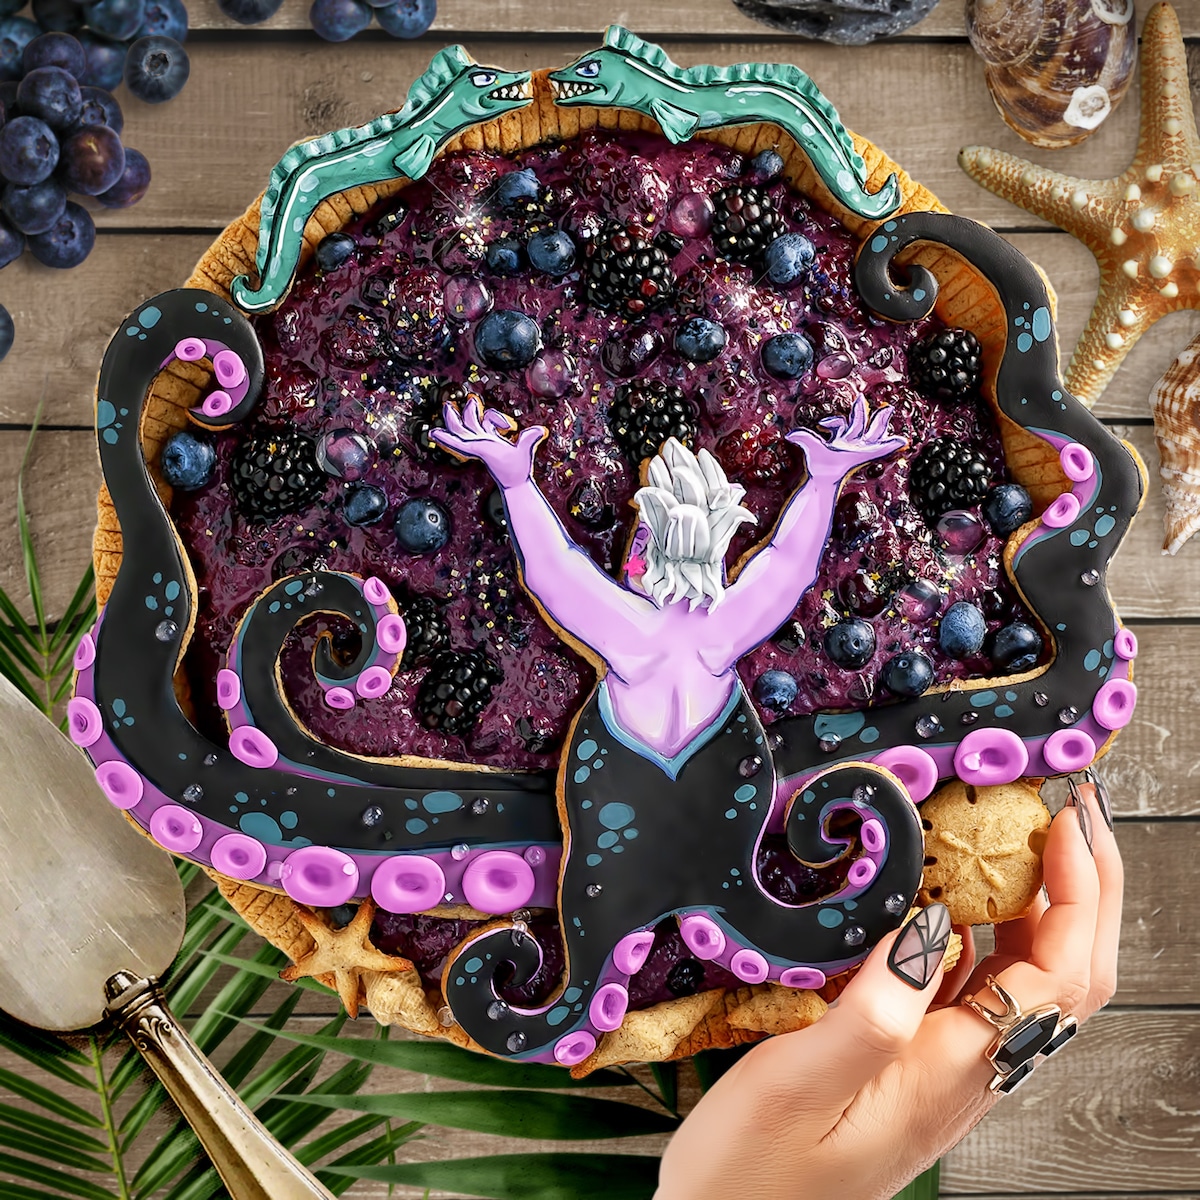 Cake Art by Inspired to Taste